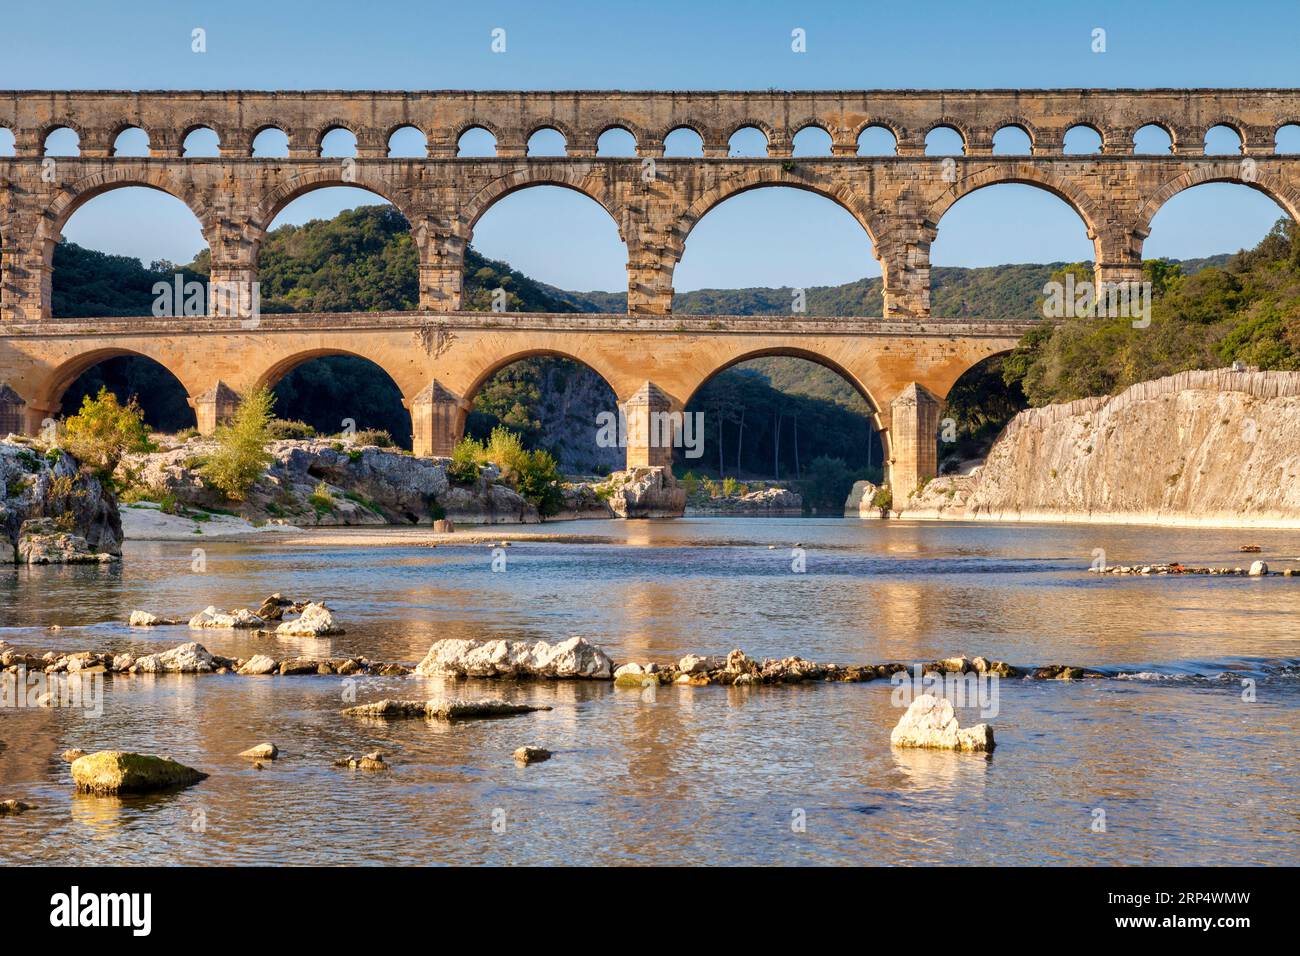 Pont du Gard Roman Aqueduct, Languedoc-Roussillon, Frankreich, im frühen Herbst. Diese wurde von den Römern im ersten Jahrhundert n. Chr. gebaut, um Wasser aus... Stockfoto